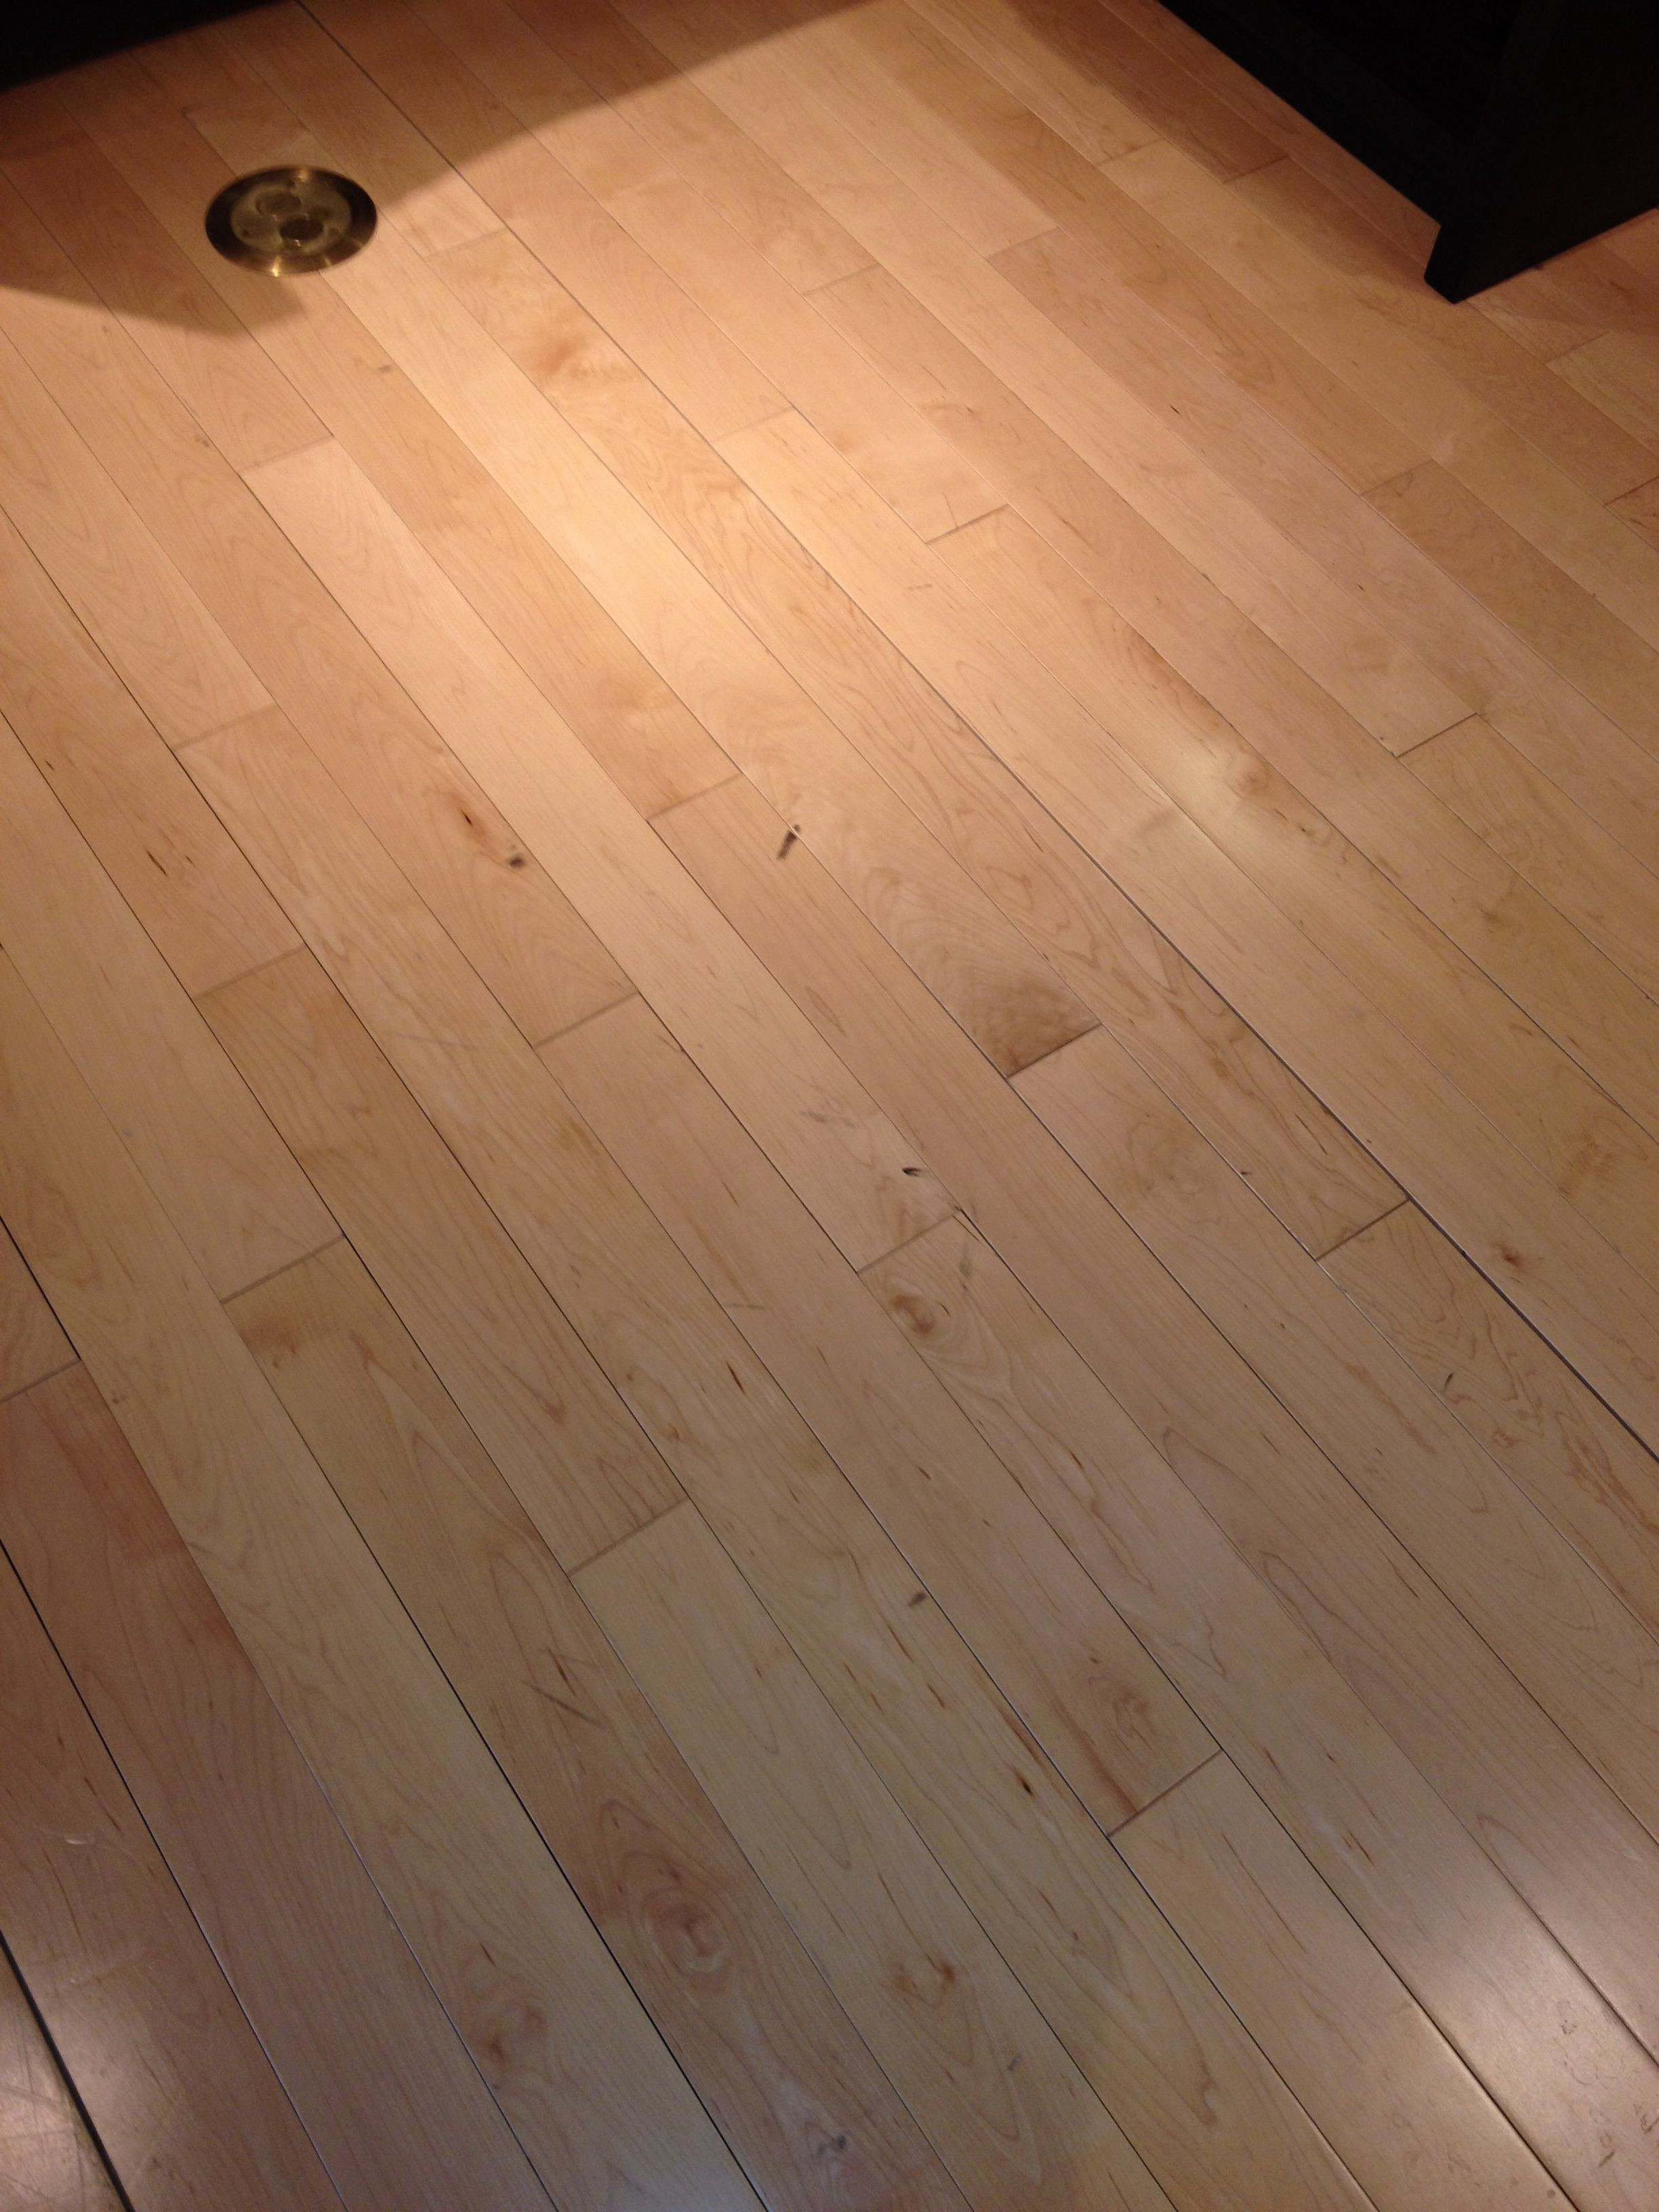 Laying Hardwood Floors Diy Of Maple Wood Floors Retail Design Sketch Rendering Pinterest for Maple Wood Floors